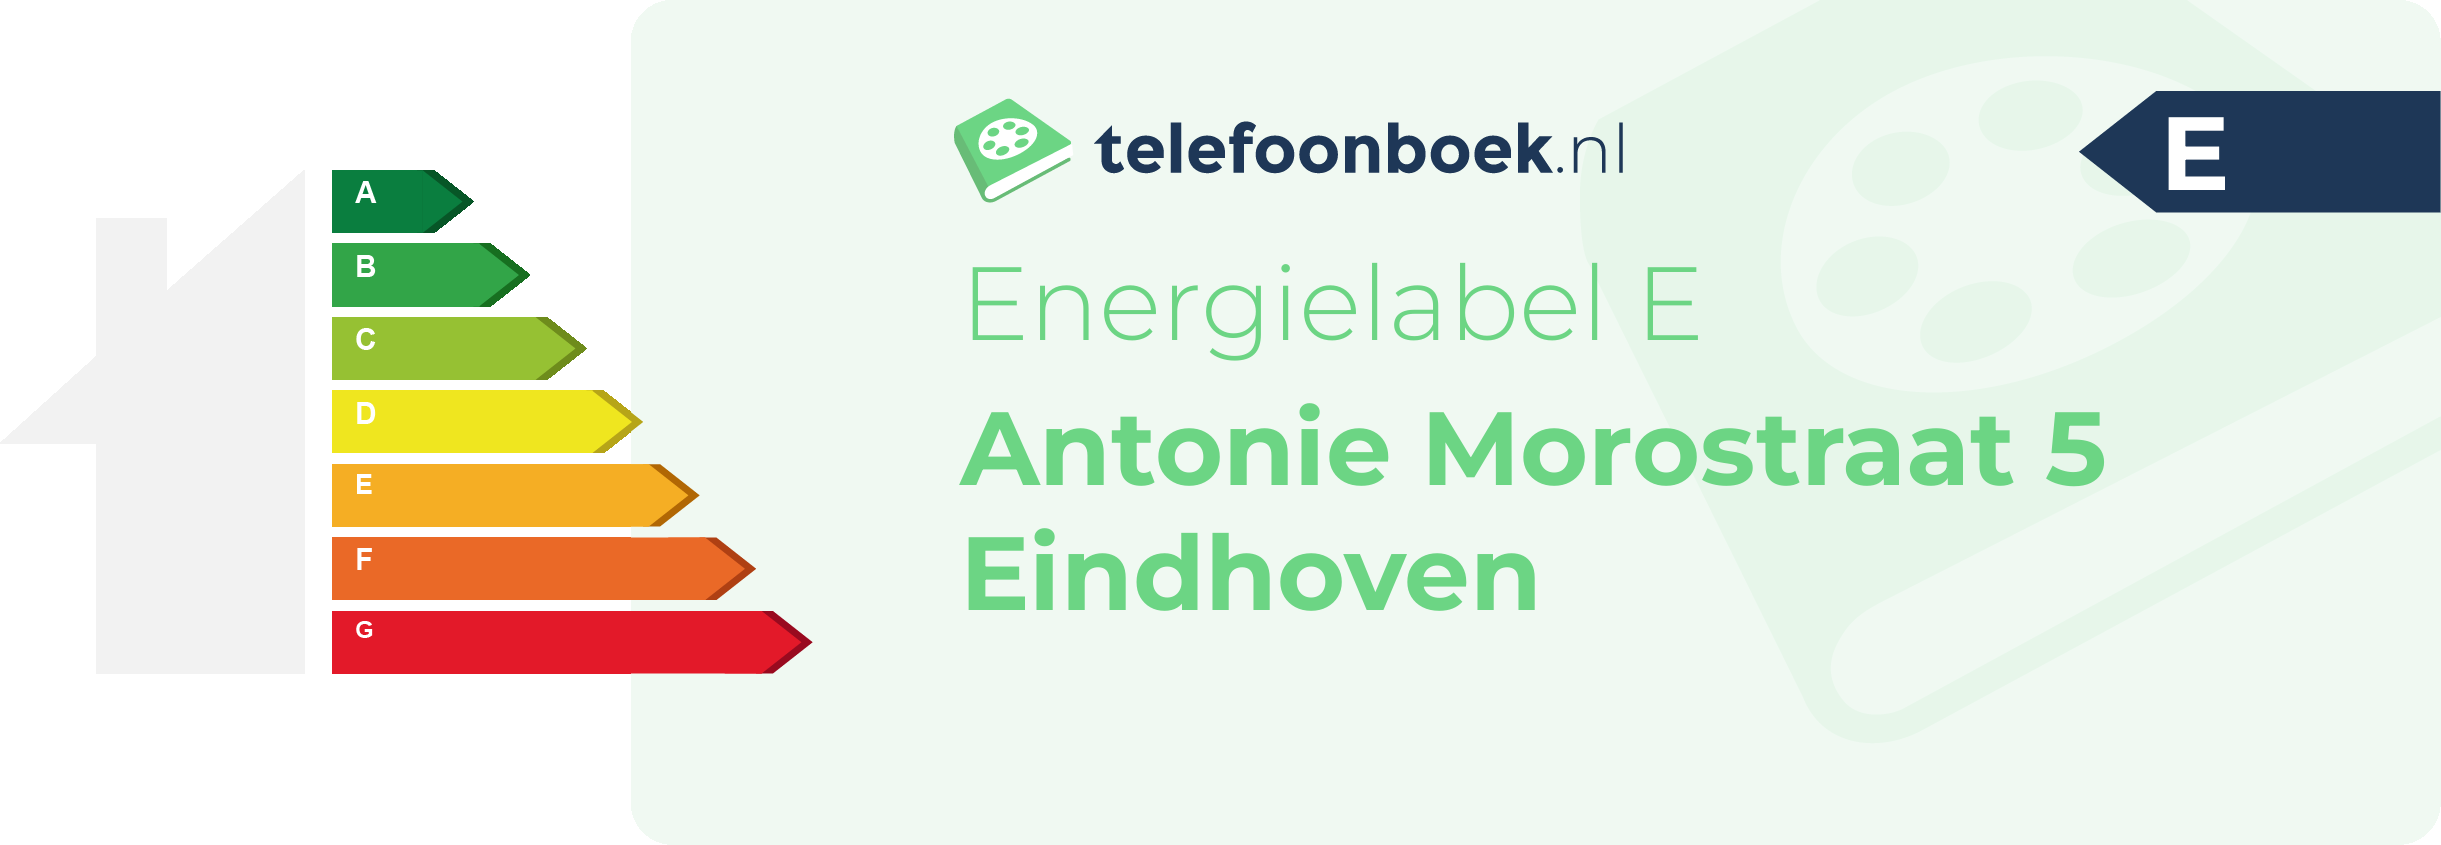 Energielabel Antonie Morostraat 5 Eindhoven